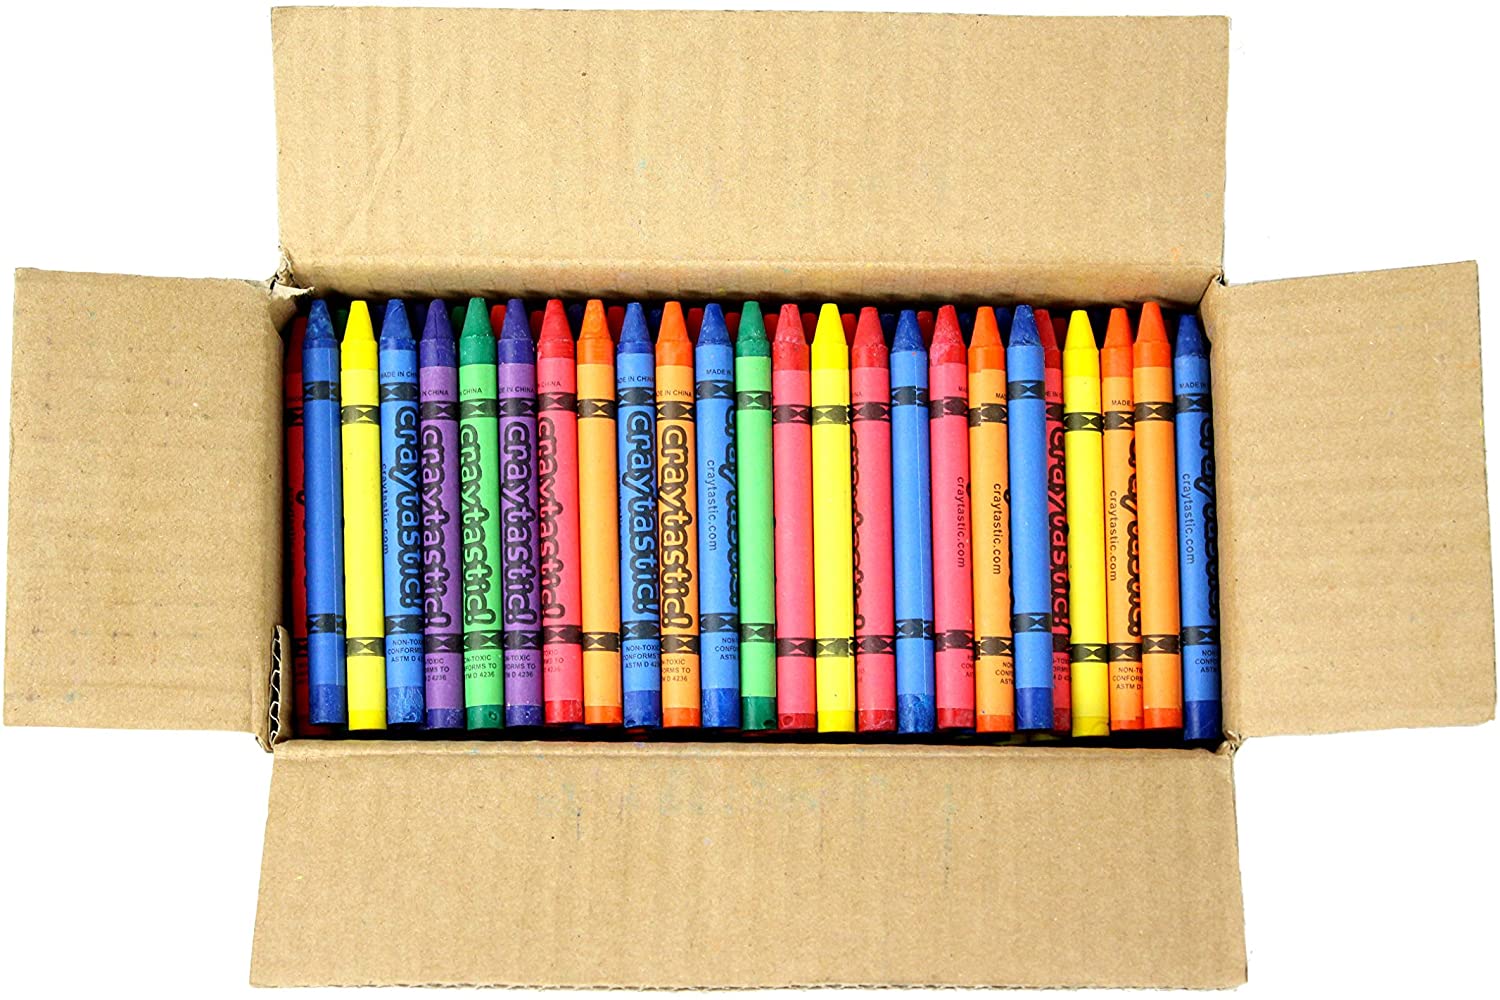 Bulk Crayons (6 Colors, Loose) for Schools, Classrooms